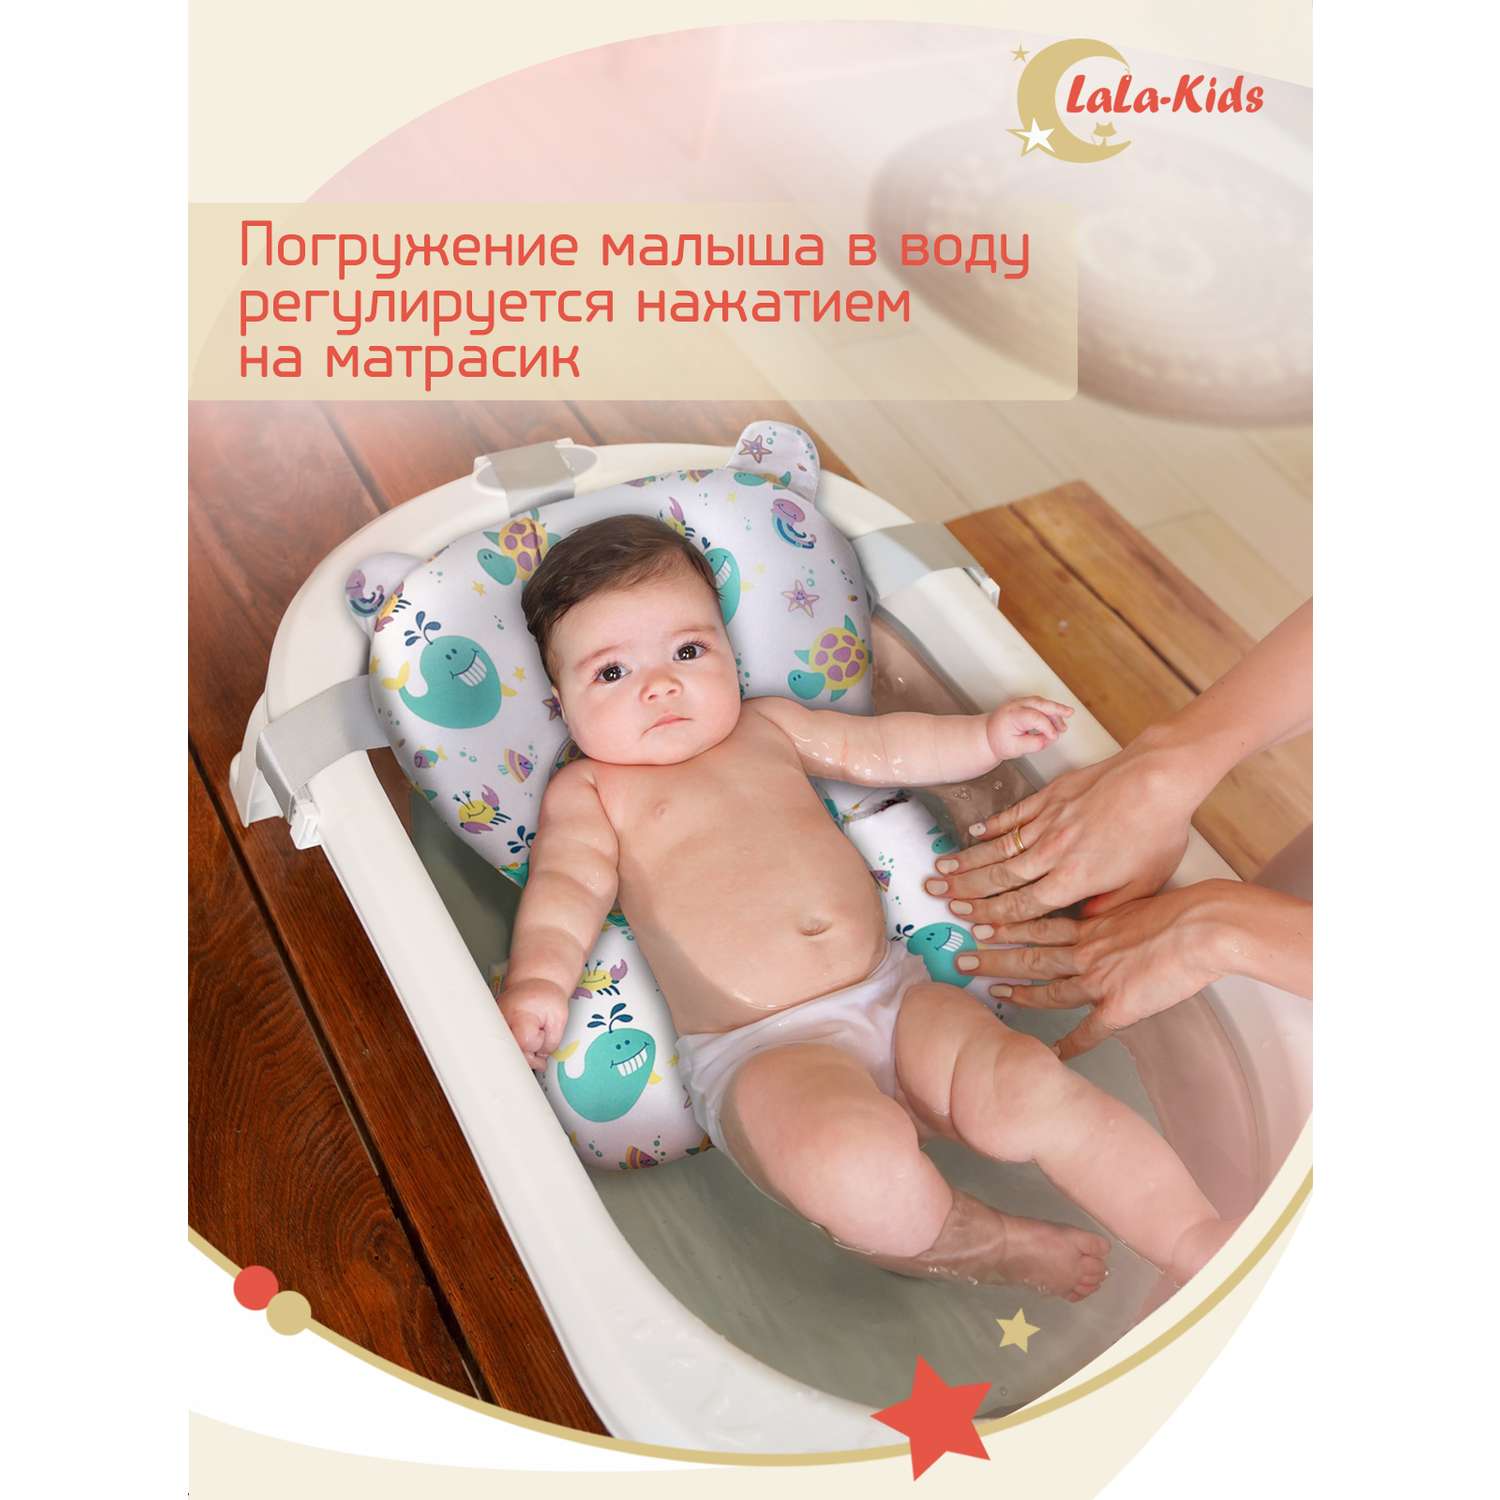 Детская ванночка с термометром LaLa-Kids складная для купания новорожденных с термометром и матрасиком в комплекте - фото 17